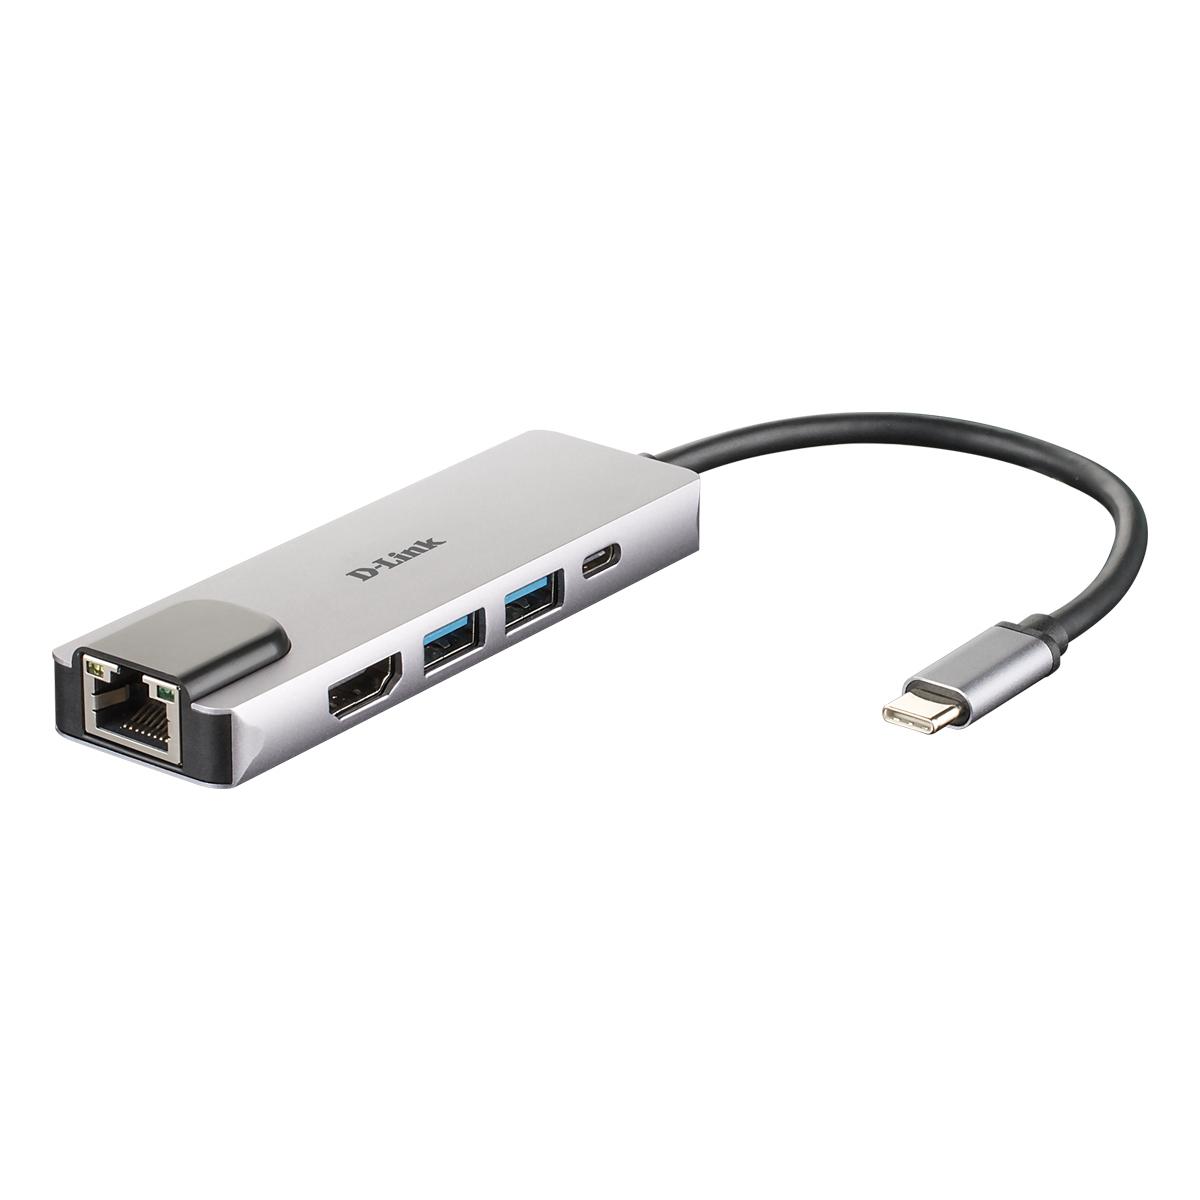 D-Link 5-In-1 USB-C Hub (DUB-M520) [2x USB 3.0, 1x HDMI, 1x USB-Typ C/Thunderbolt 3, 1x Gigabit LAN] von D-Link